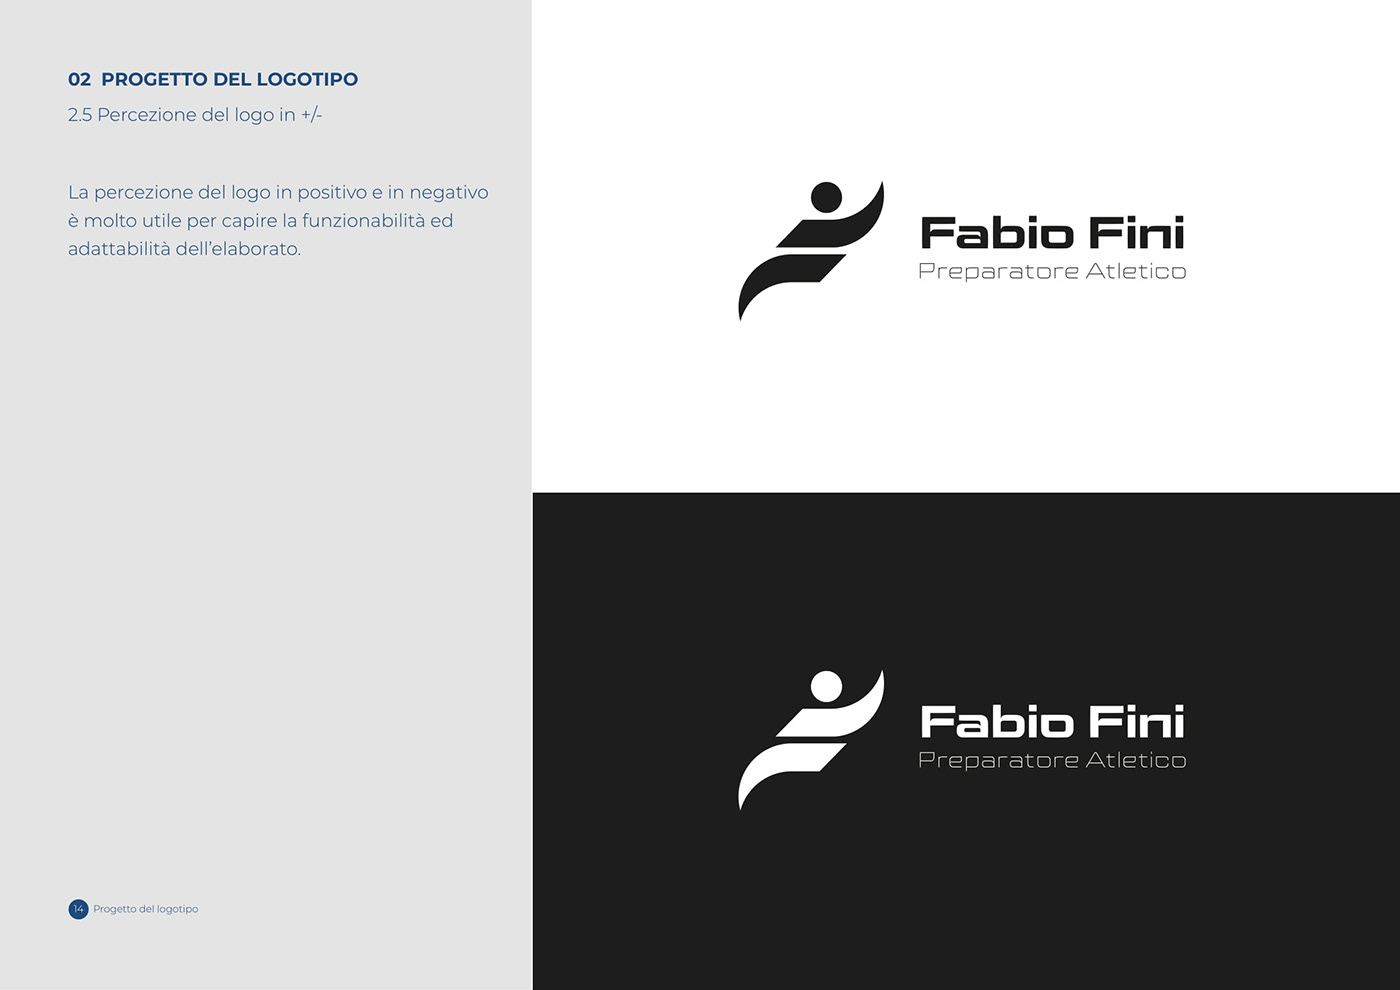 Brand Design brand identity identity Logo Design Logotype text typography   visual visual identity